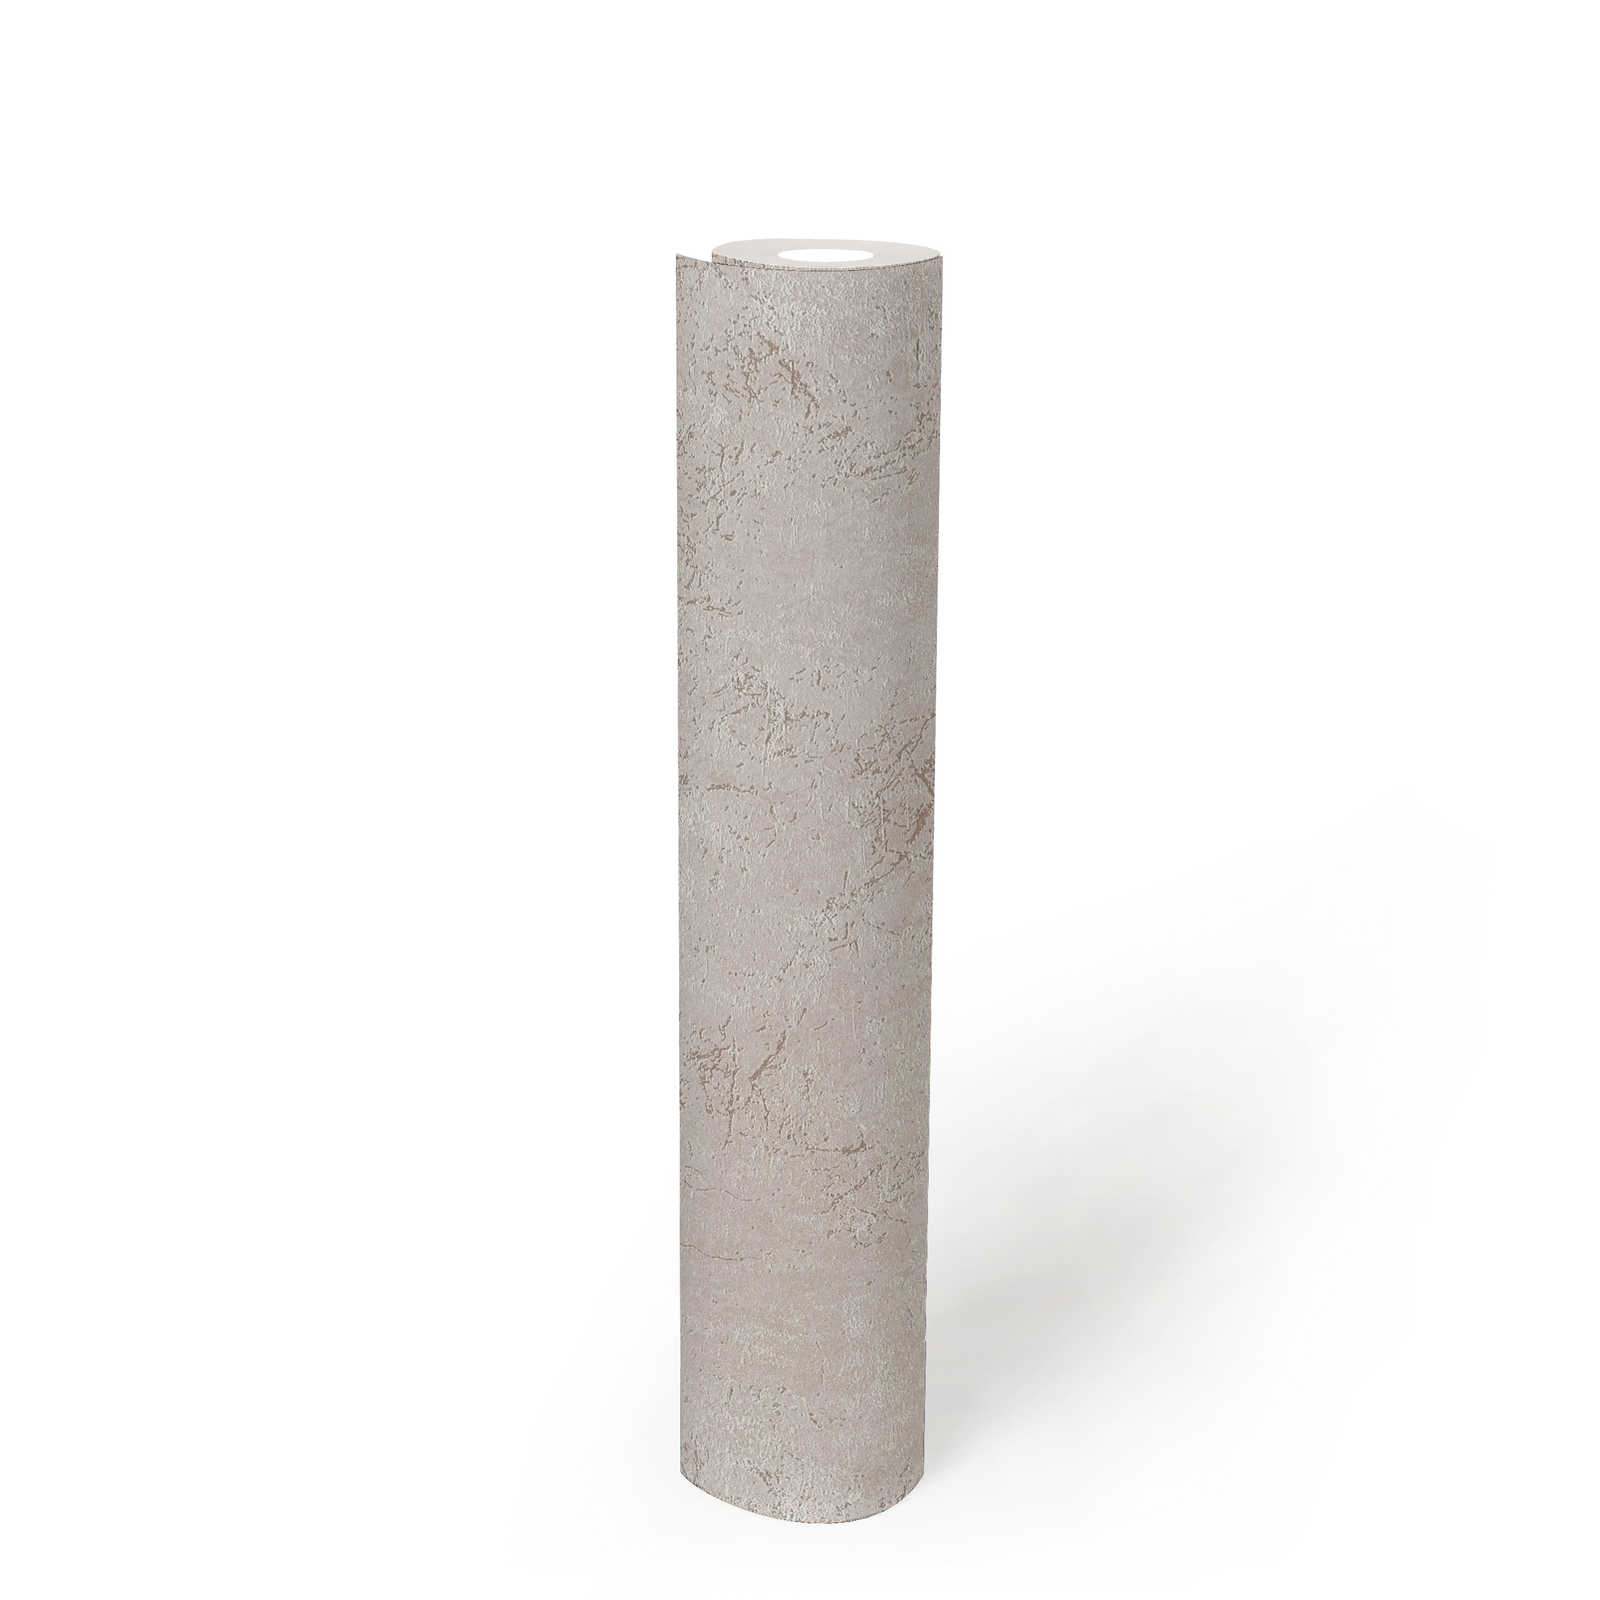             Lichtgrijs behang betonlook structuurpatroon, mat
        